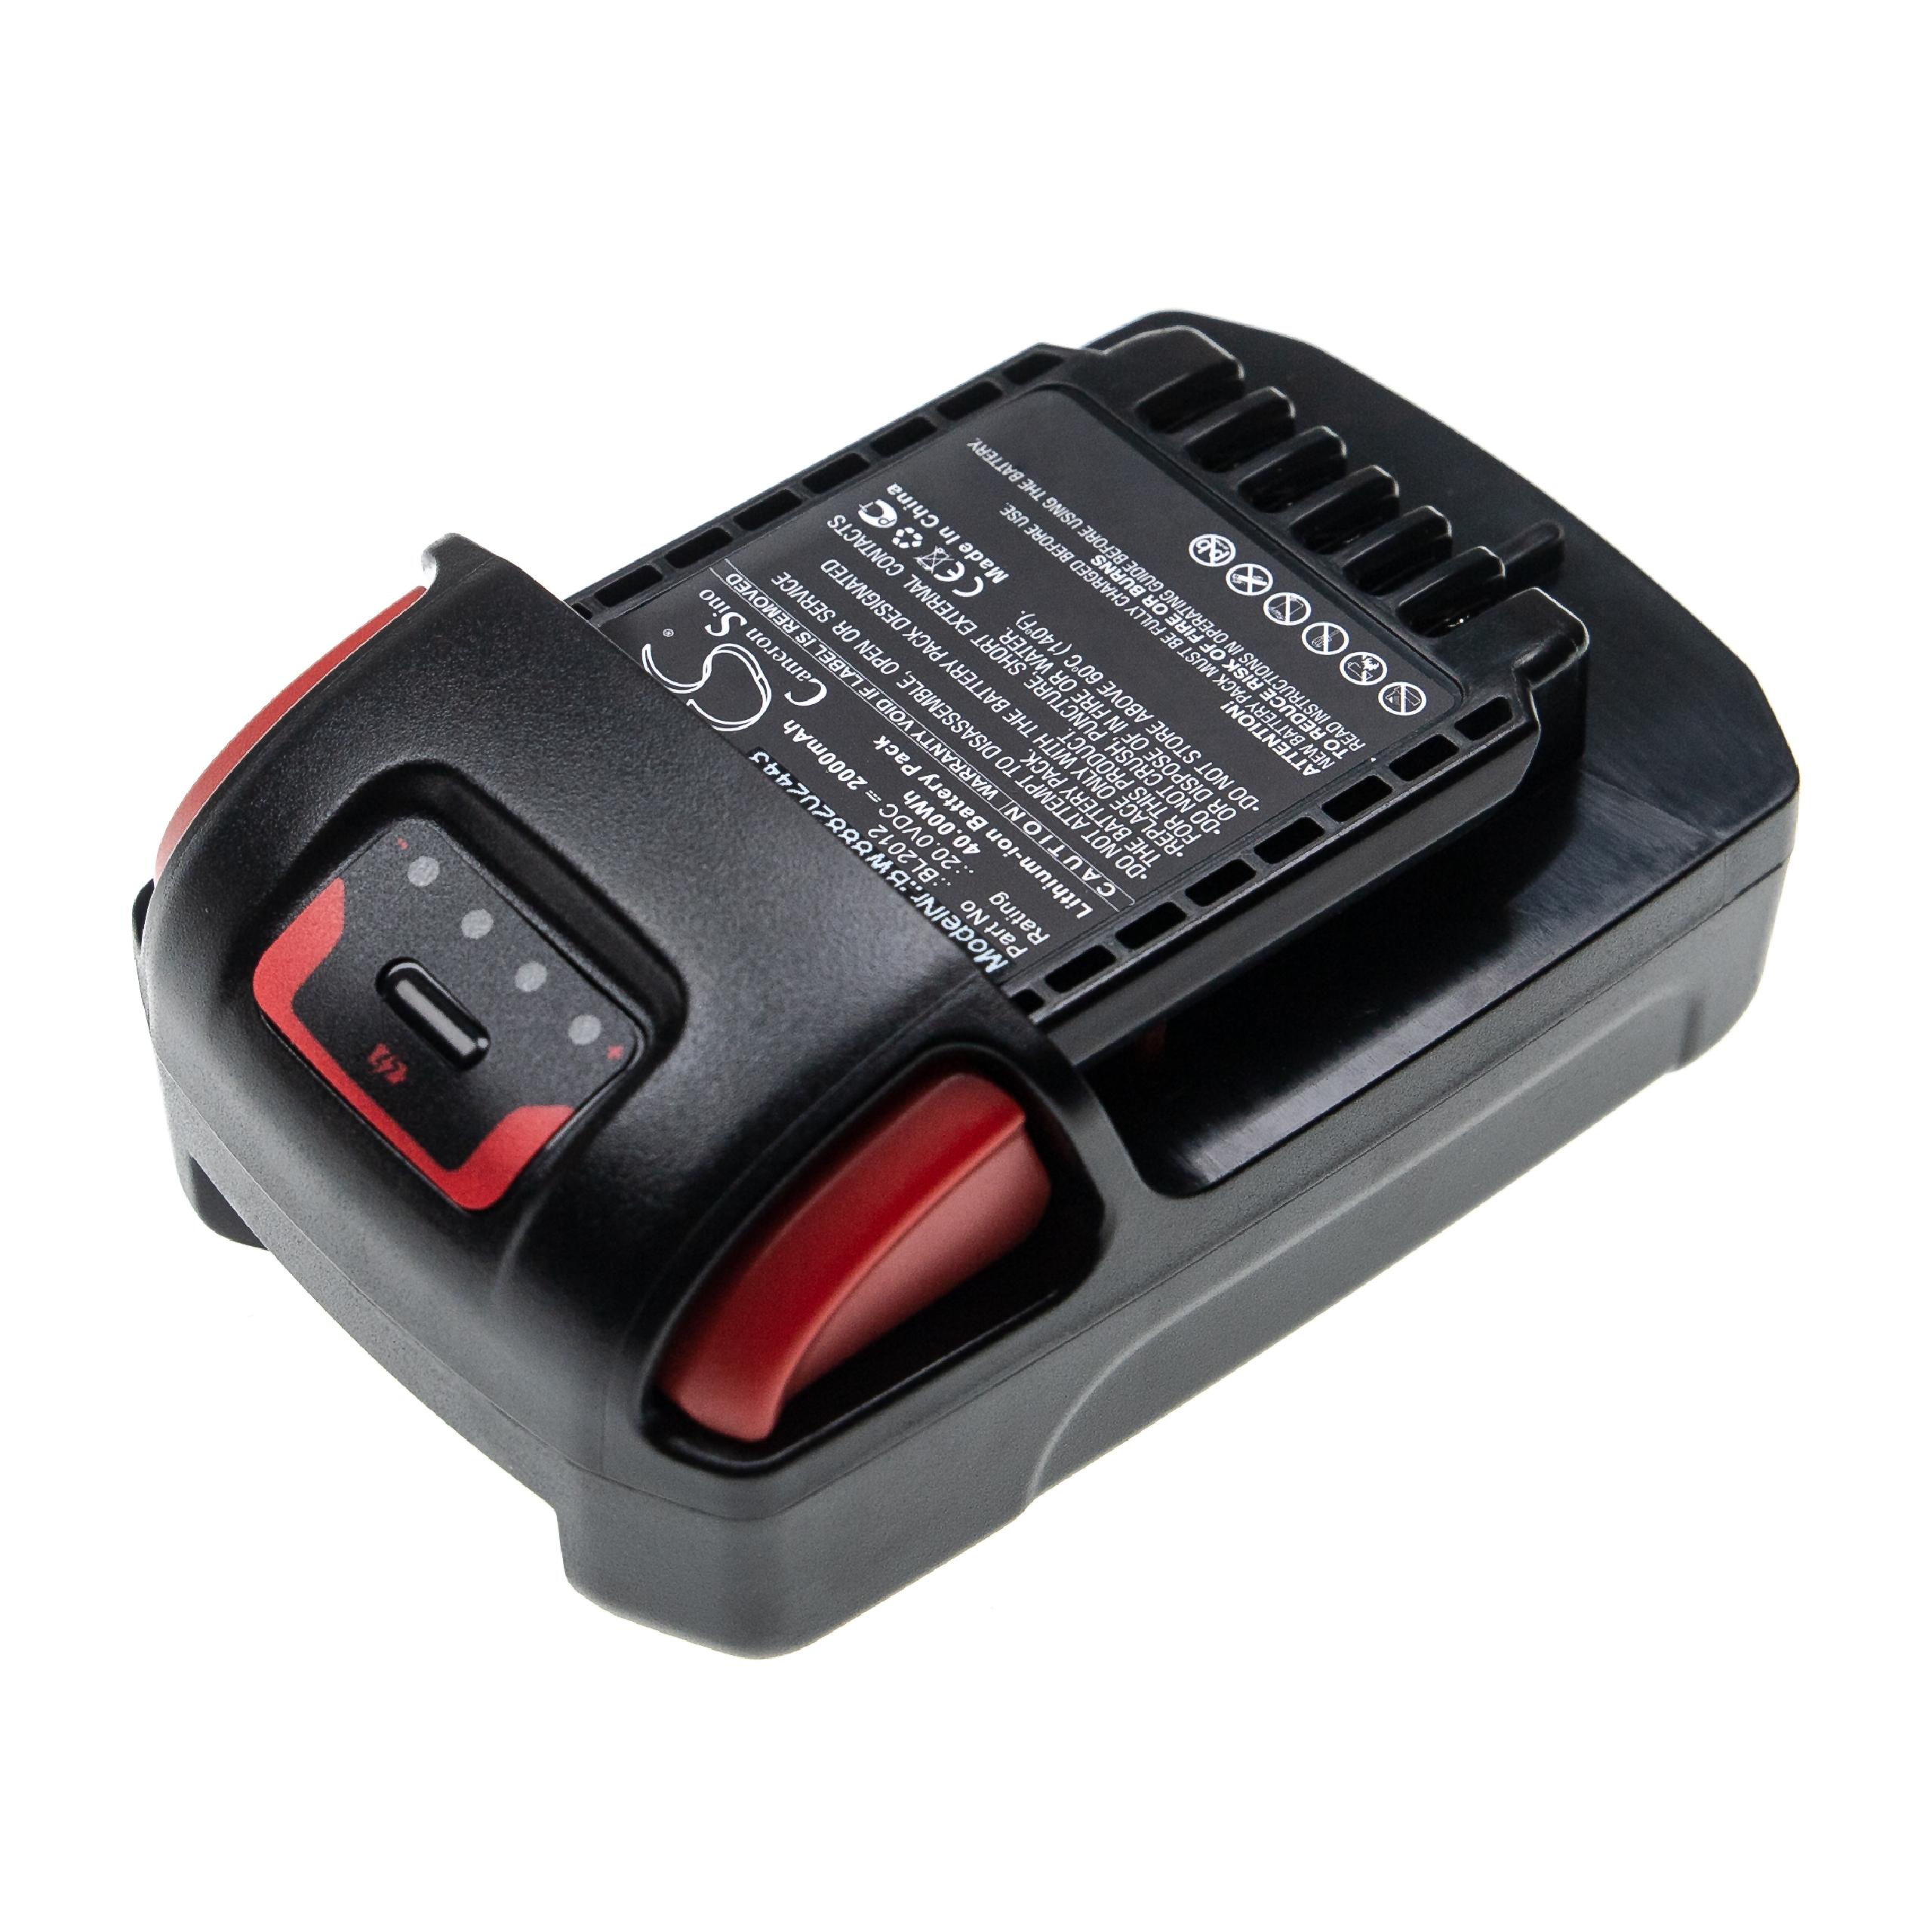 Batterie remplace Ingersoll Rand BL2022, BL2012, BL2010 pour outil électrique - 2000 mAh, 20 V, Li-ion